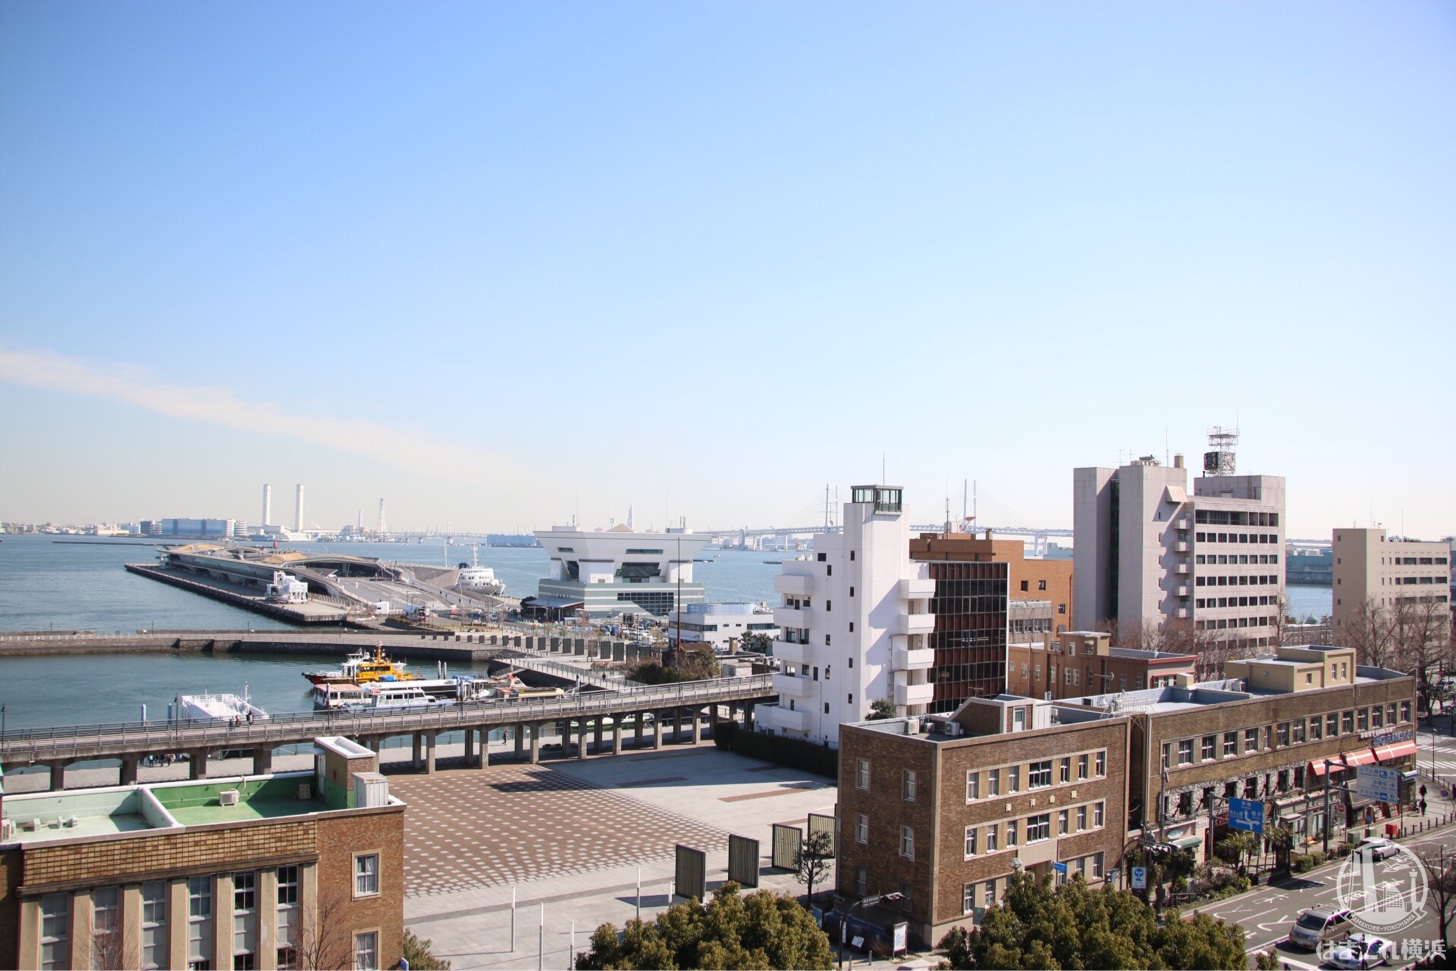 神奈川県庁本庁舎（キングの塔）展望台から見た横浜港